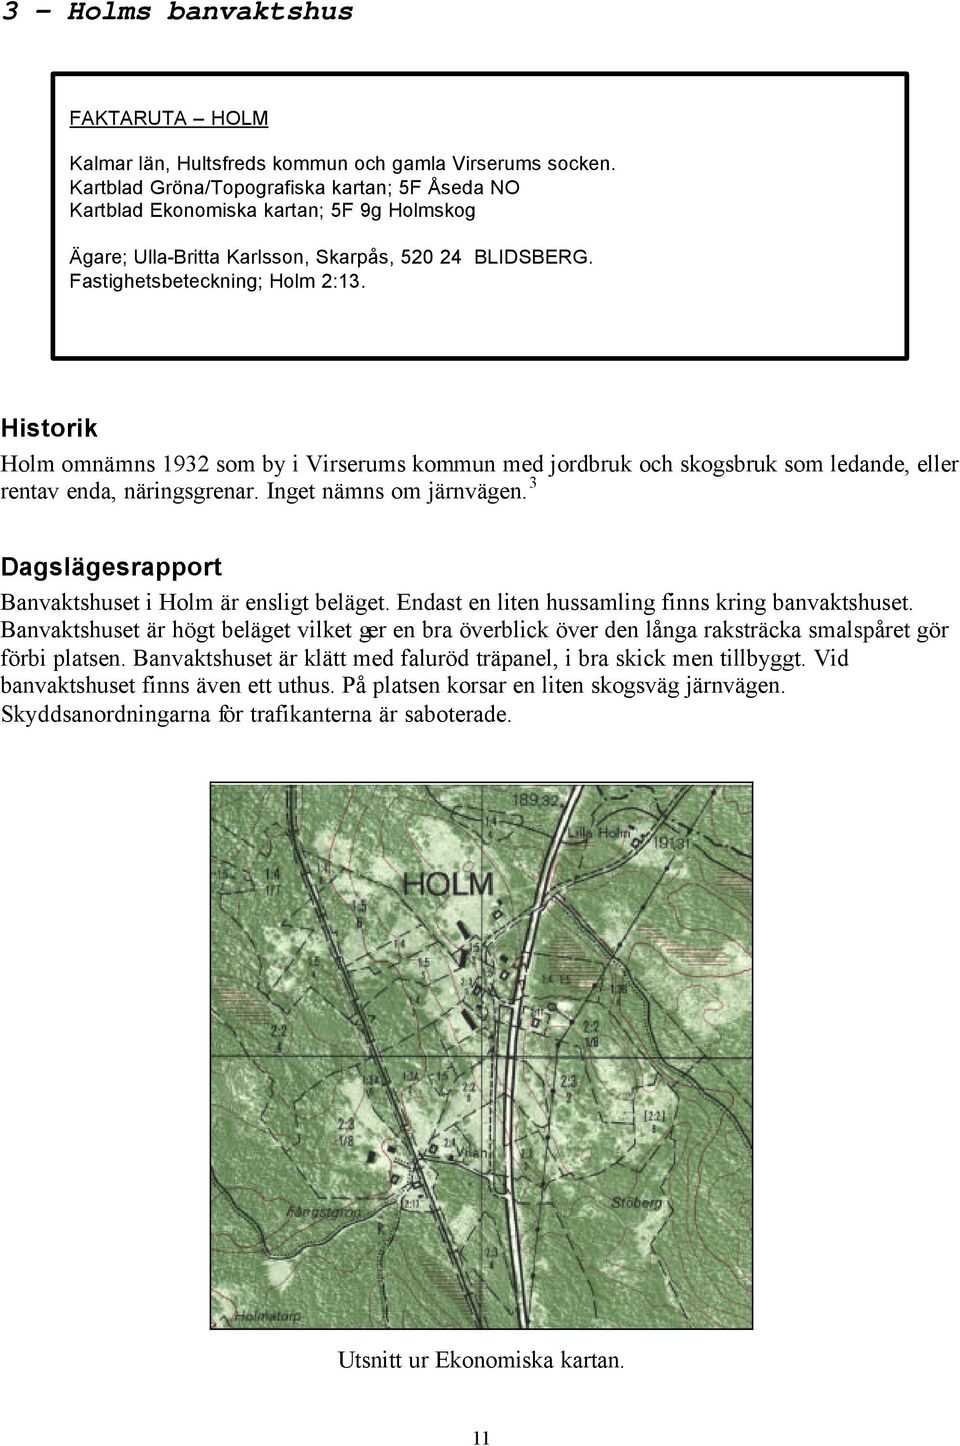 Historik Holm omnämns 1932 som by i Virserums kommun med jordbruk och skogsbruk som ledande, eller rentav enda, näringsgrenar. Inget nämns om järnvägen.